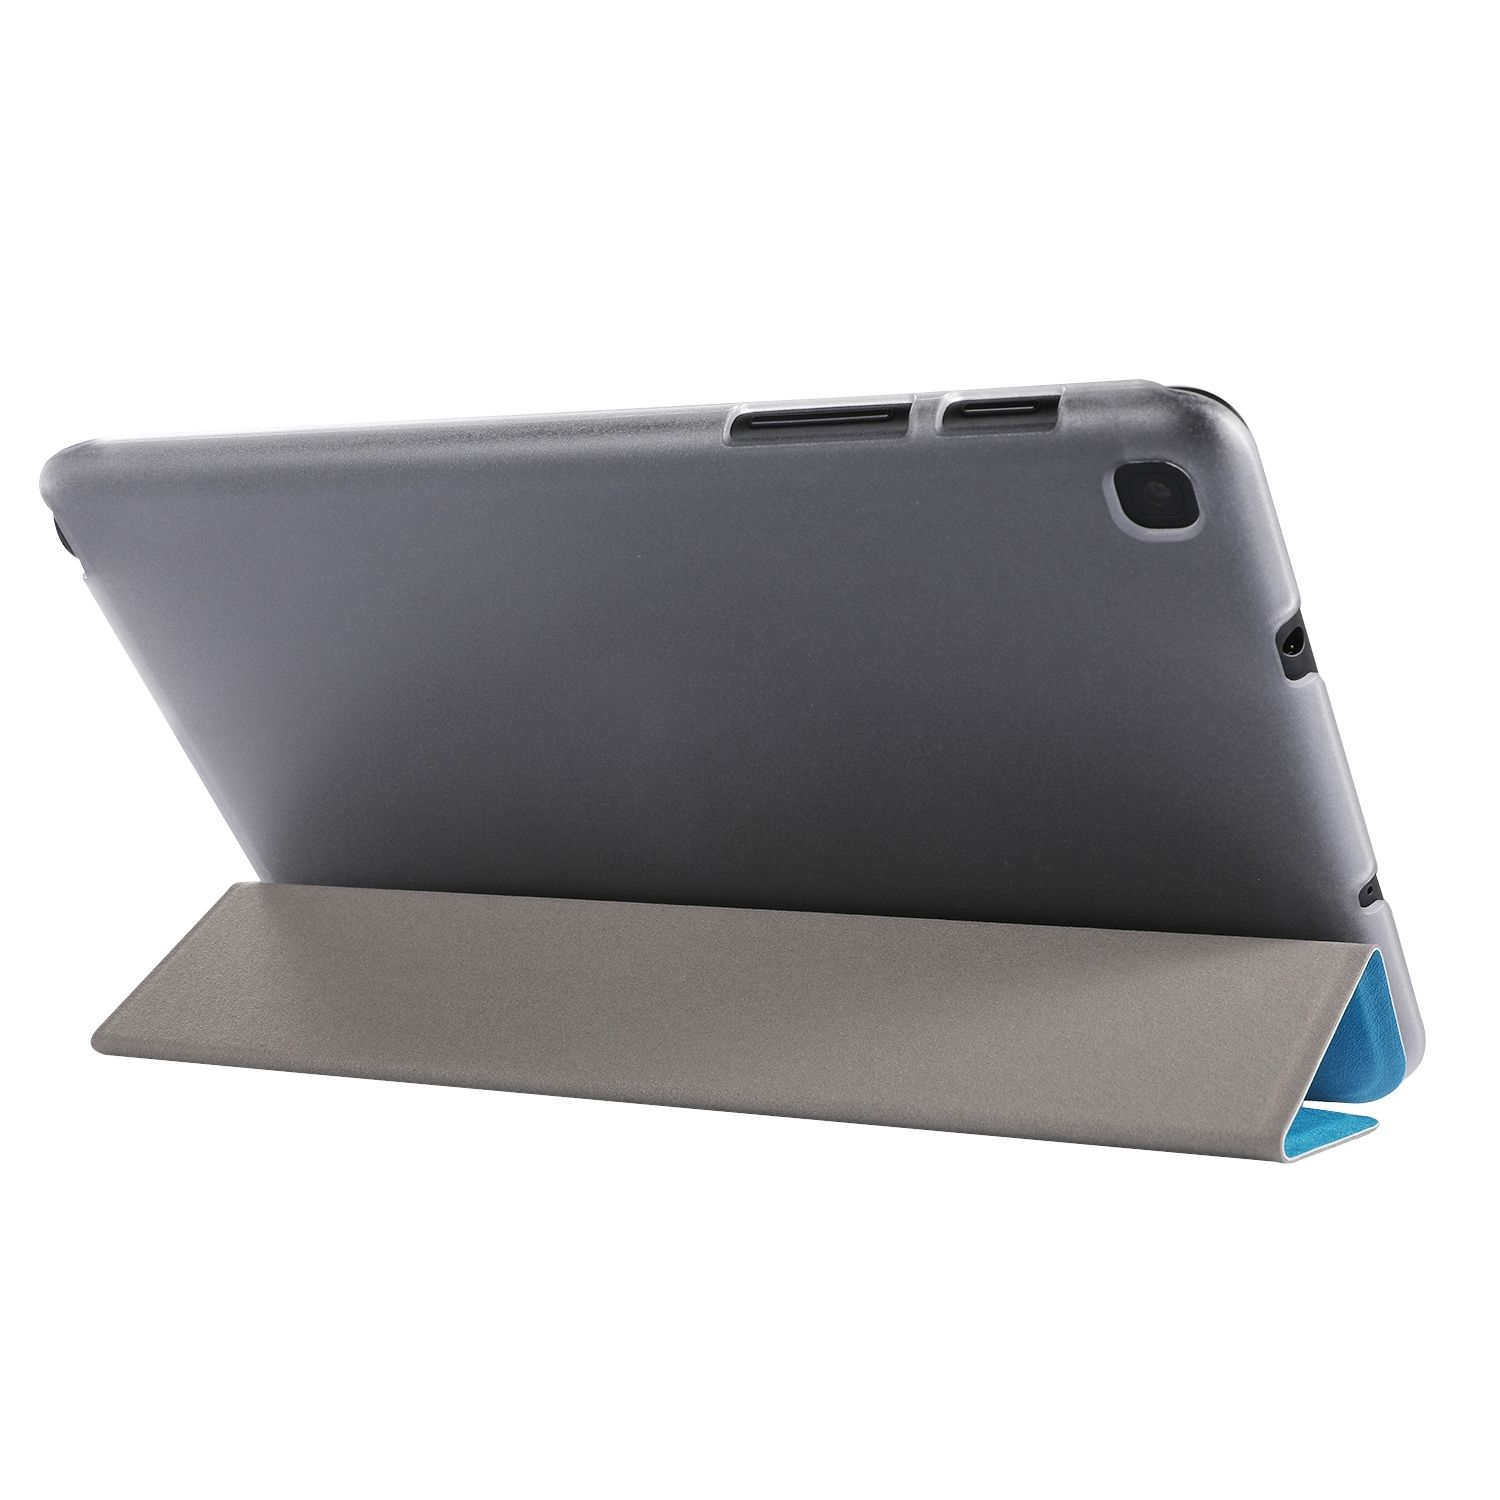 Tablet-Hülle Blau Bookcover Kunstleder, DESIGN KÖNIG Tablet-Hülle für Samsung